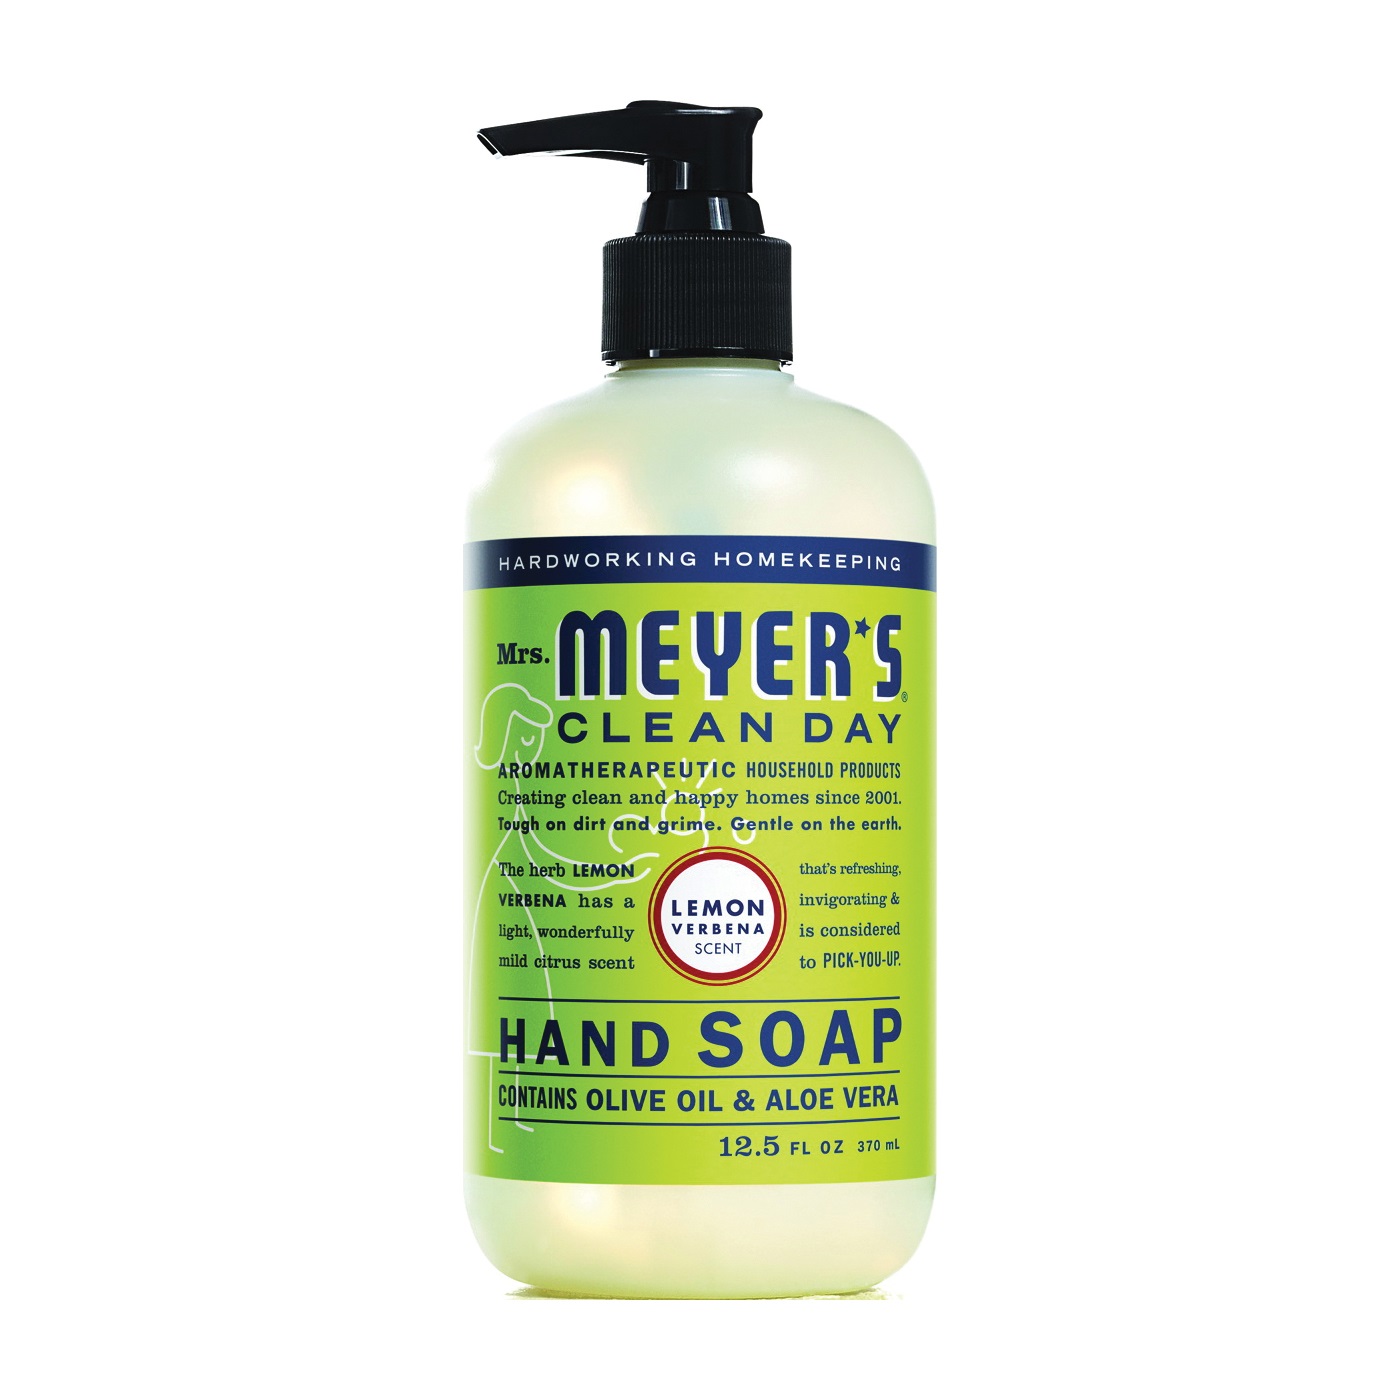 Mrs. Meyer's 12104 Hand Soap, Liquid, Lemon Verbena, 12.5 oz Bottle - 1